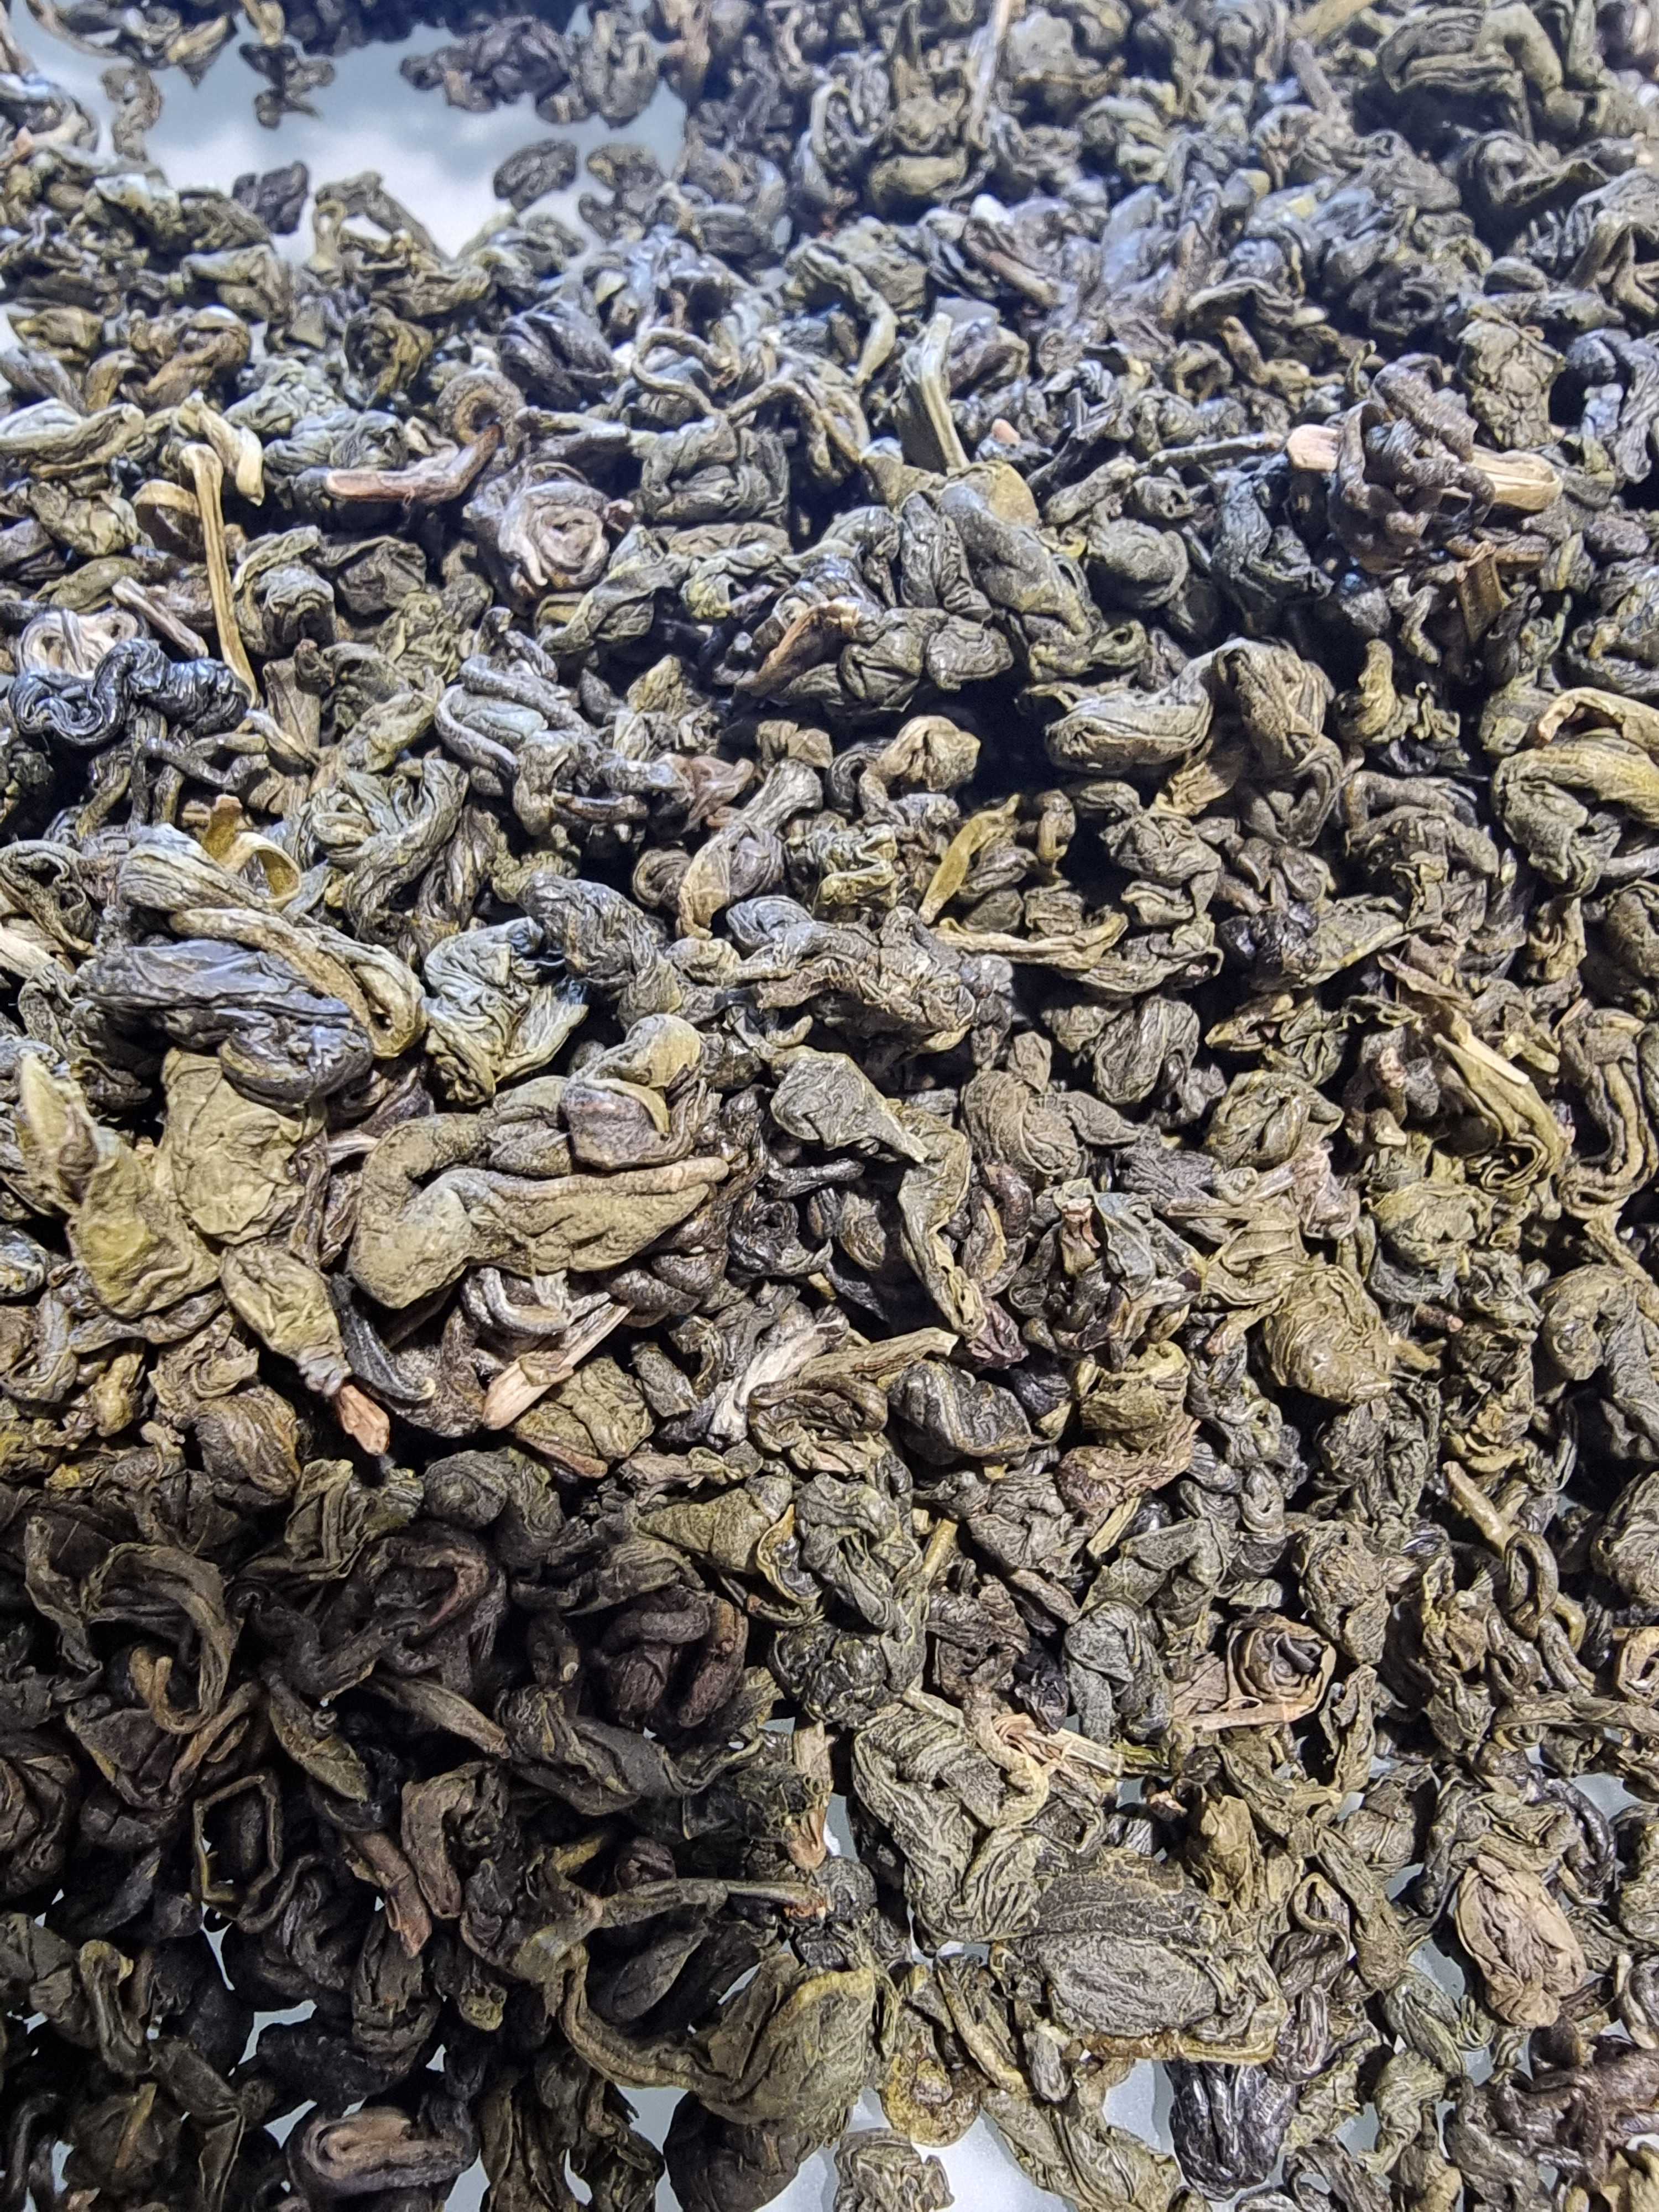 ЛЮКС сегмент- Зеленый чай с плантации Тин Си Китай - ферментированный!